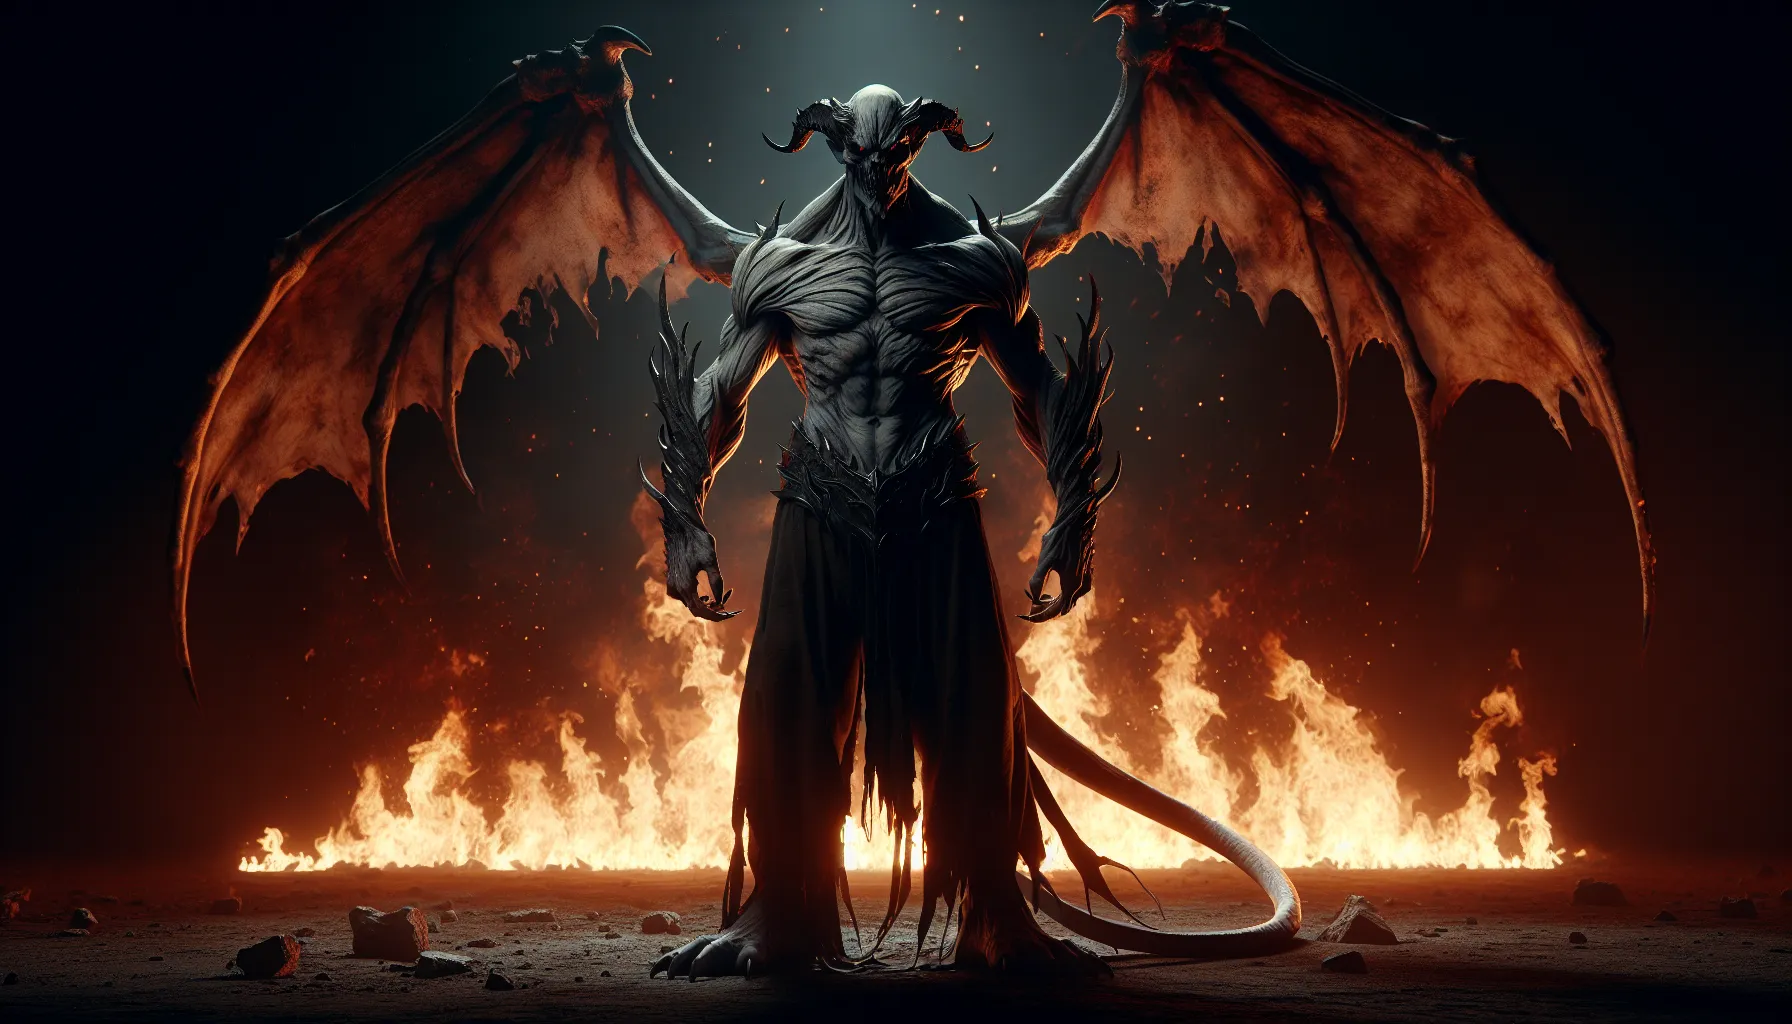 Ilustración de una figura demoníaca en una imagen oscura con llamas de fuego en el fondo'.